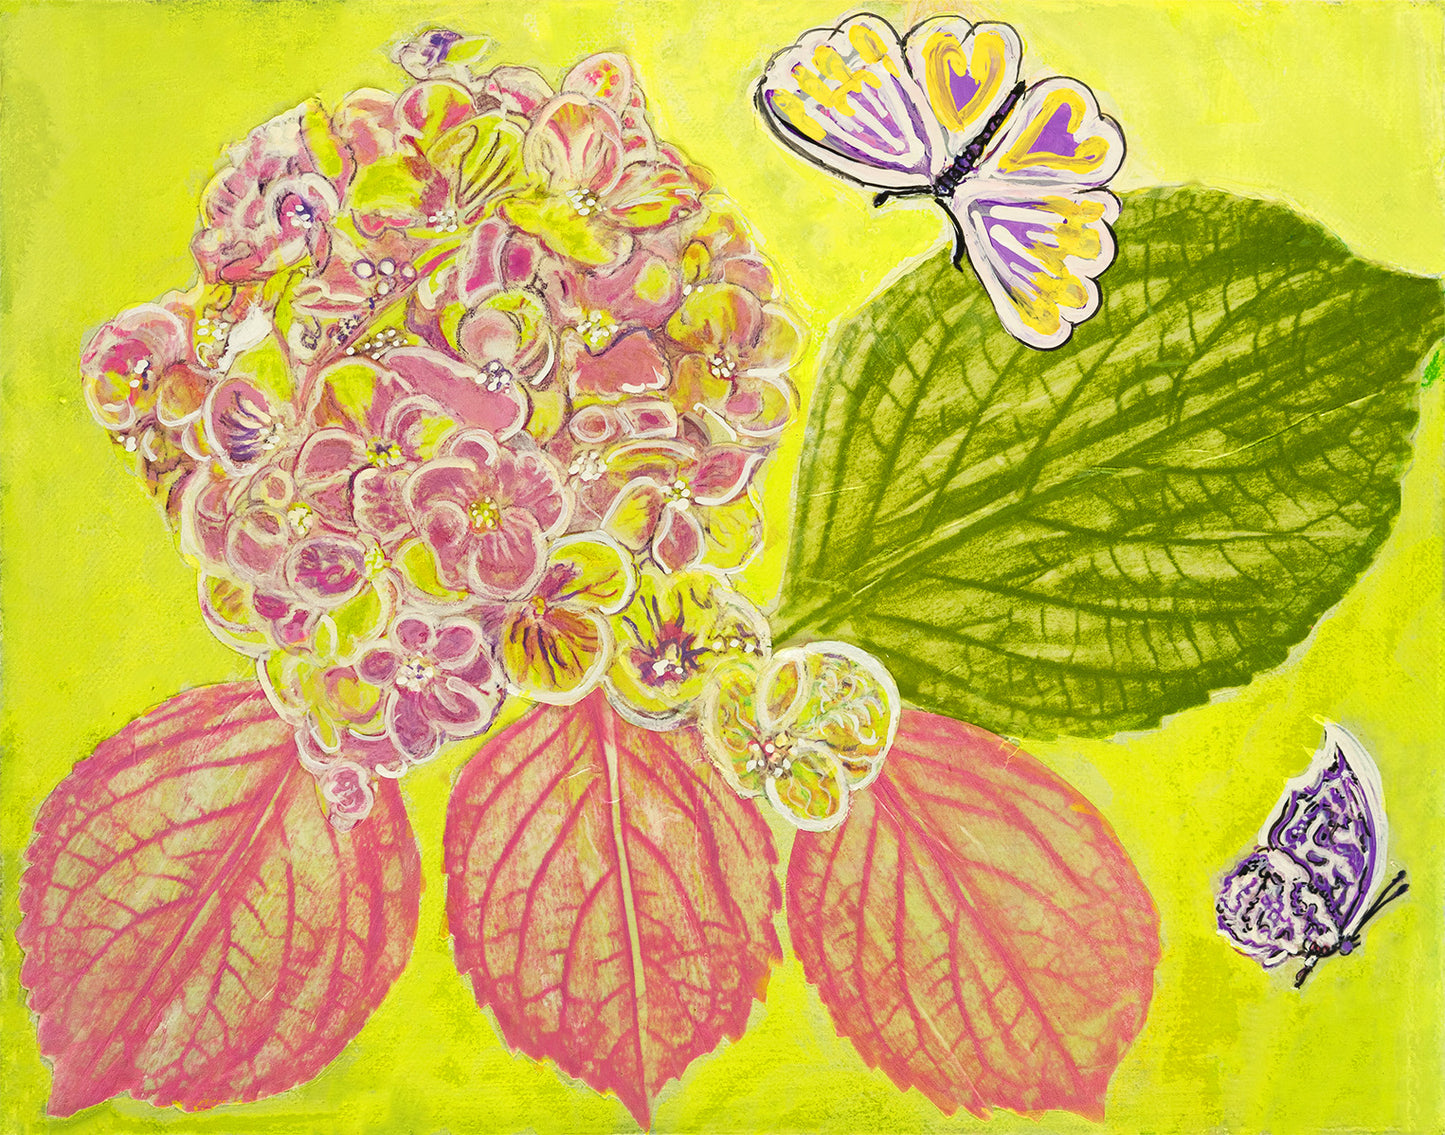 Hydrangea with Butterflies